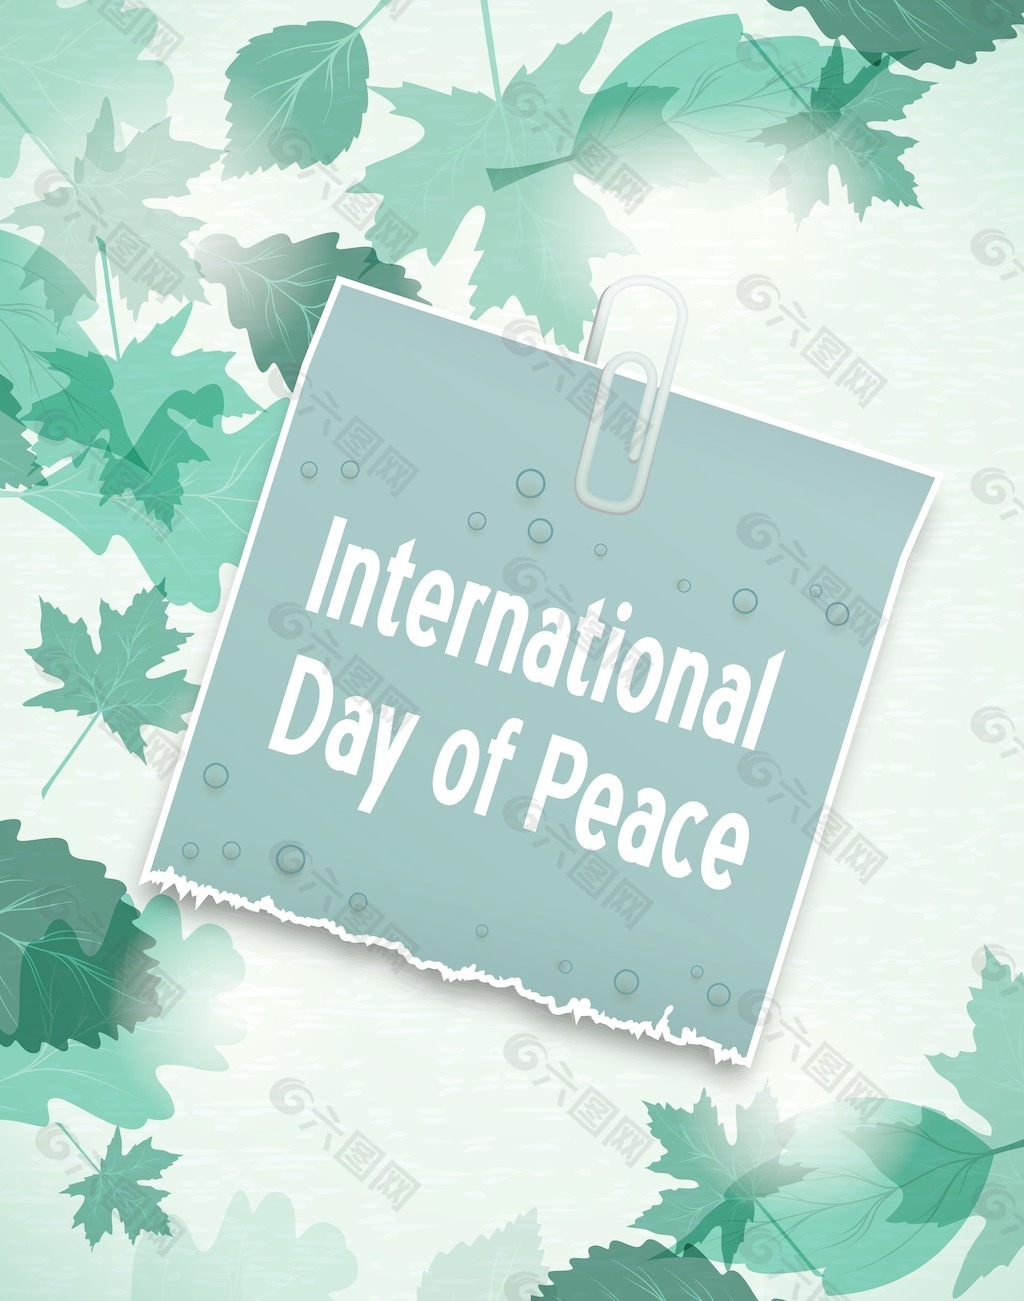 国际和平日向量